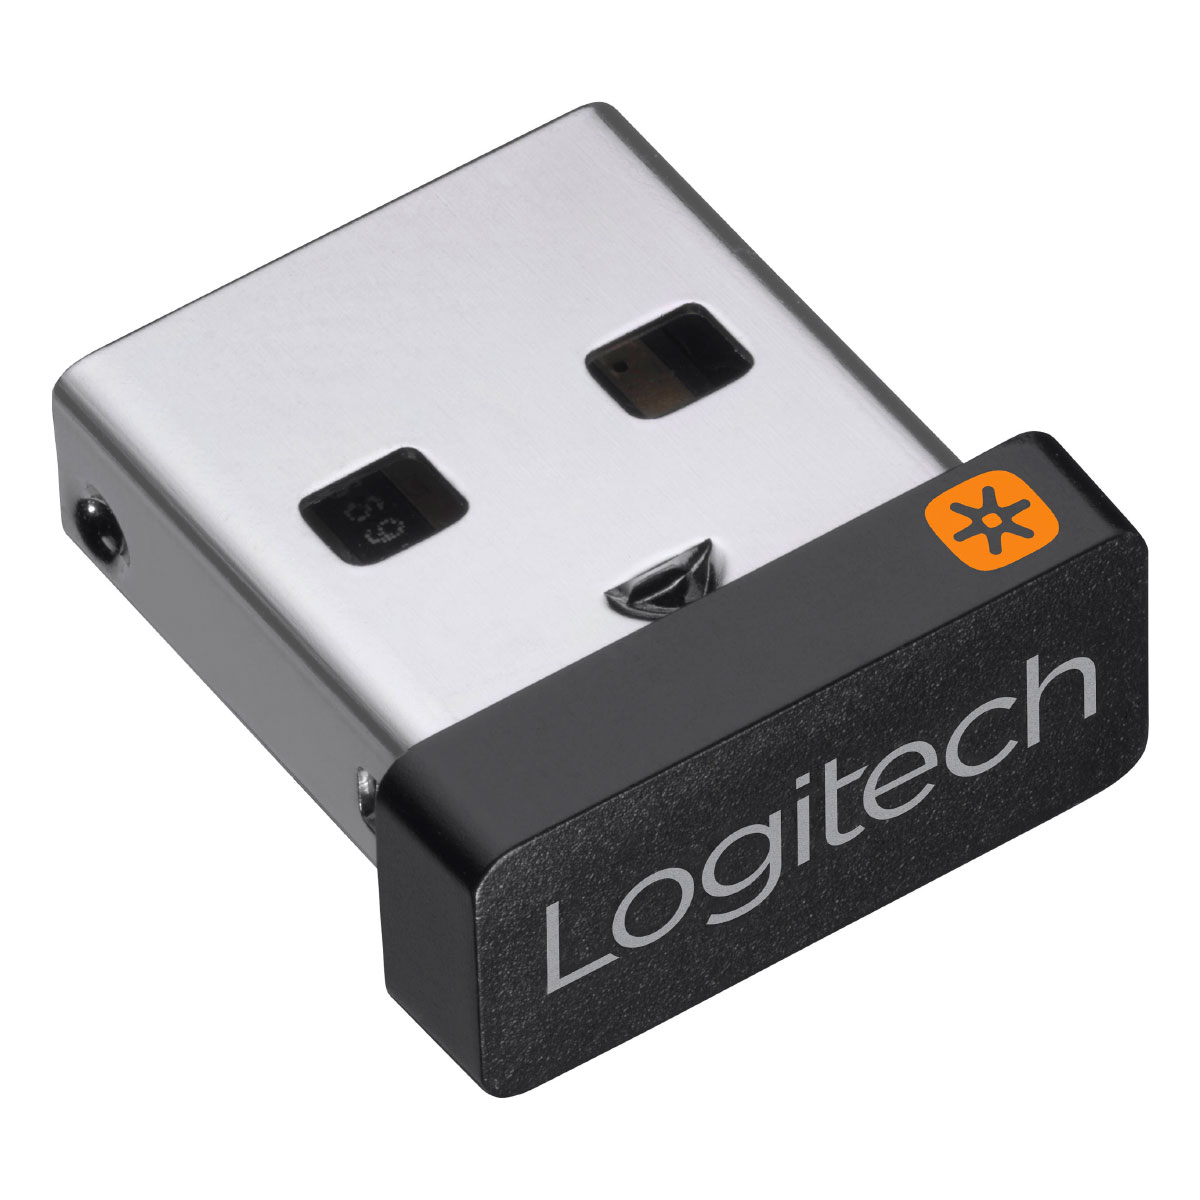 Receptor Logitech Unifying USB - 910-005235 Nano - 2.4GHz - até 6 teclados e mouses compatíveis